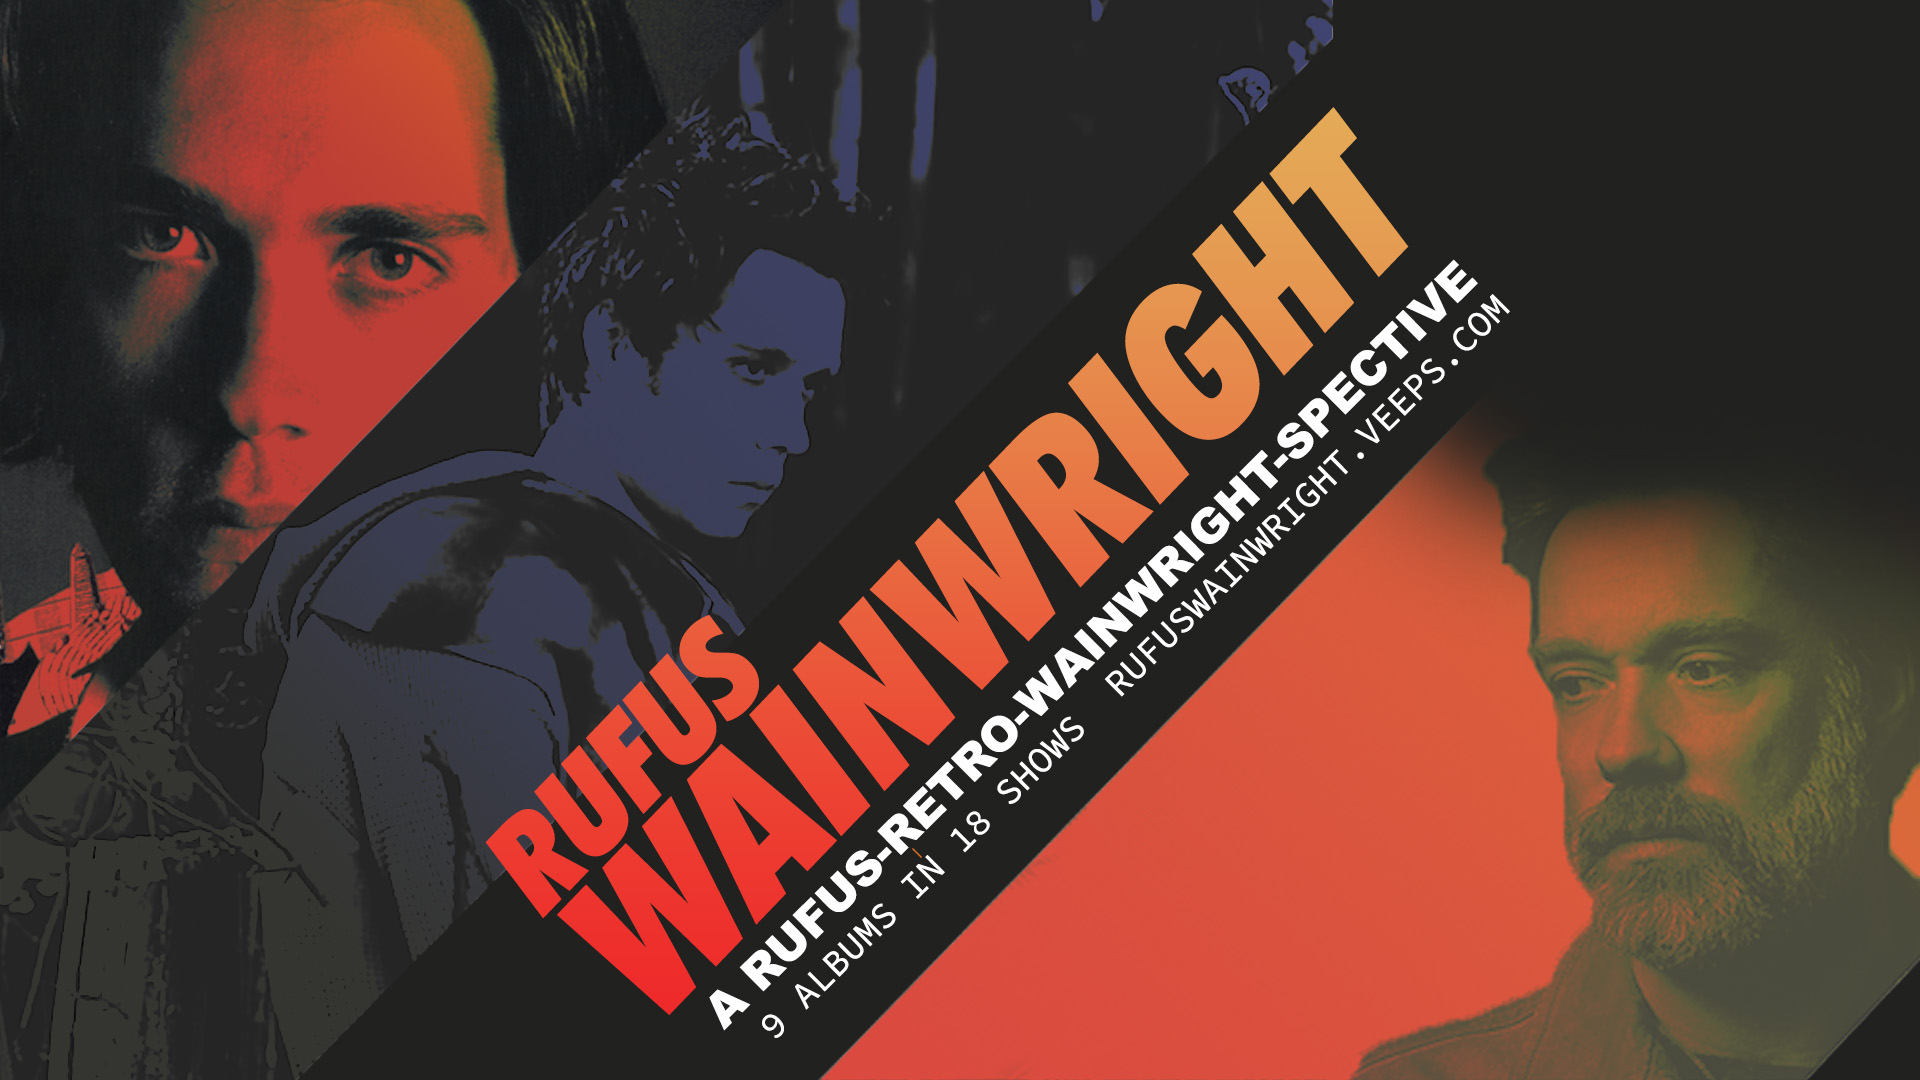 Ακούστε τον Rufus Wainwright στην διαδικτυακή συναυλία του Rufus-Retro-Wainwright-Spective!  (Μεταδόθηκε: 17.01.2021)